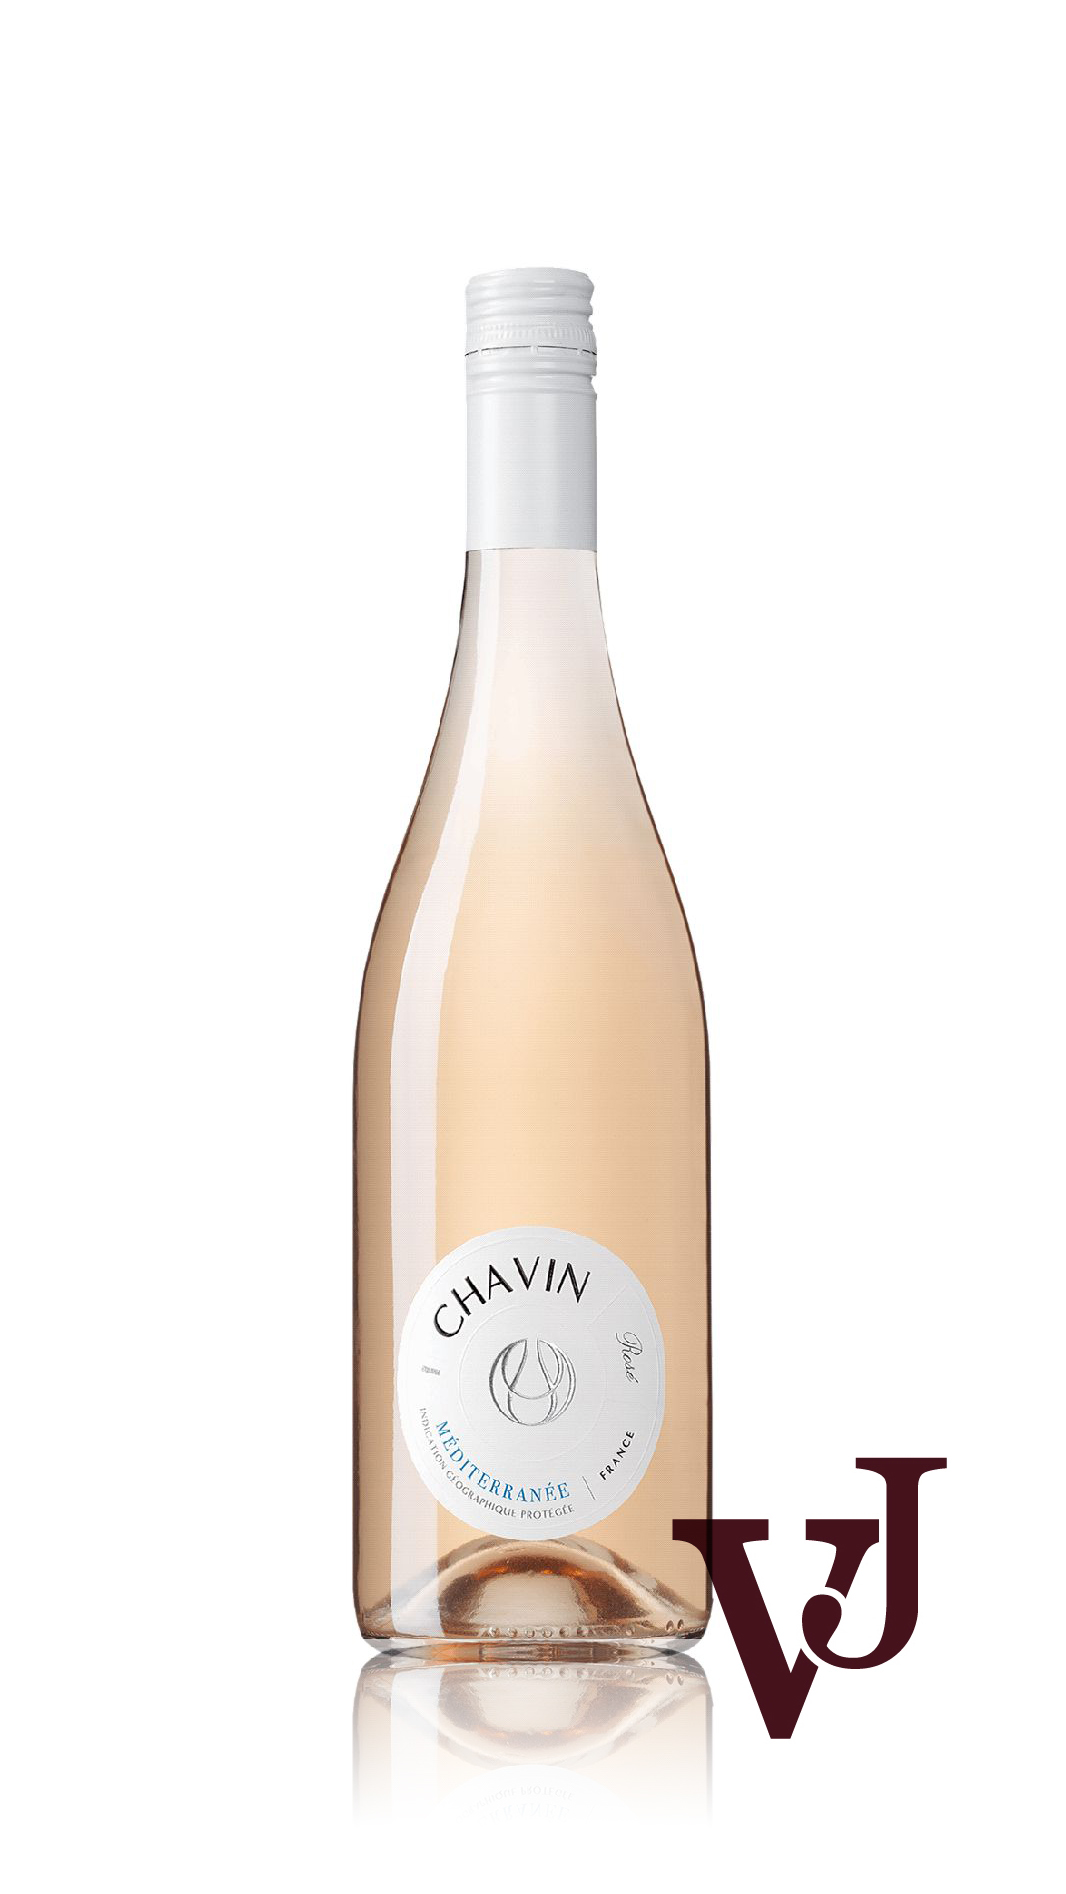 Rosé Vin - Chavin Rosé Méditerranée 2022 artikel nummer 5584301 från producenten Domaines Pierre Chavin från området Frankrike